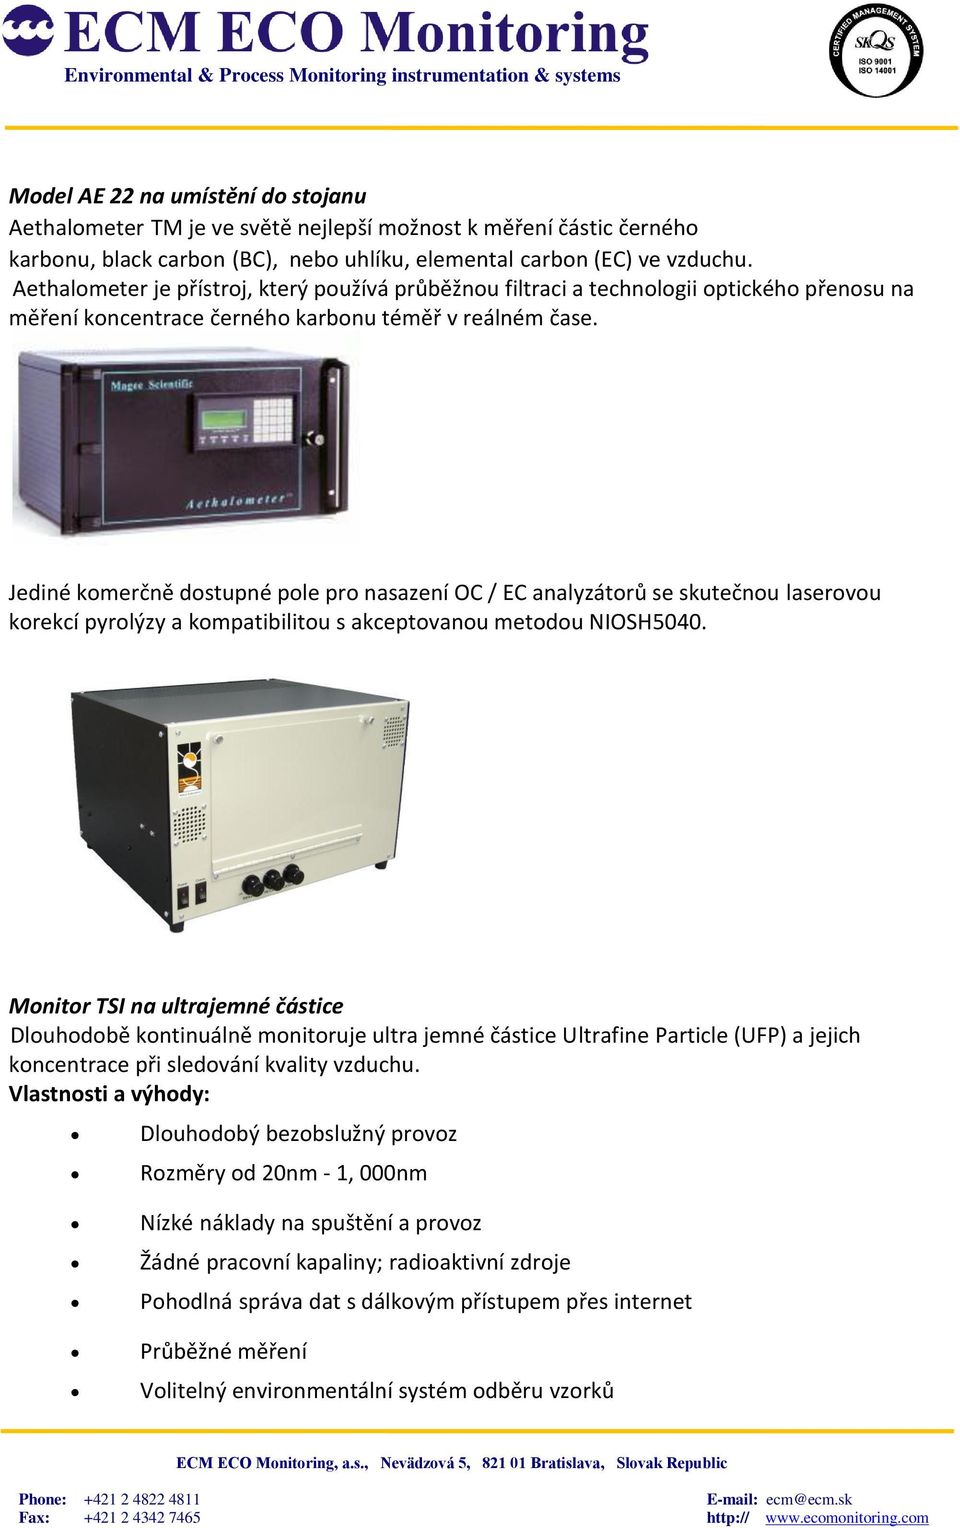 Jediné komerčně dostupné pole pro nasazení OC / EC analyzátorů se skutečnou laserovou korekcí pyrolýzy a kompatibilitou s akceptovanou metodou NIOSH5040.